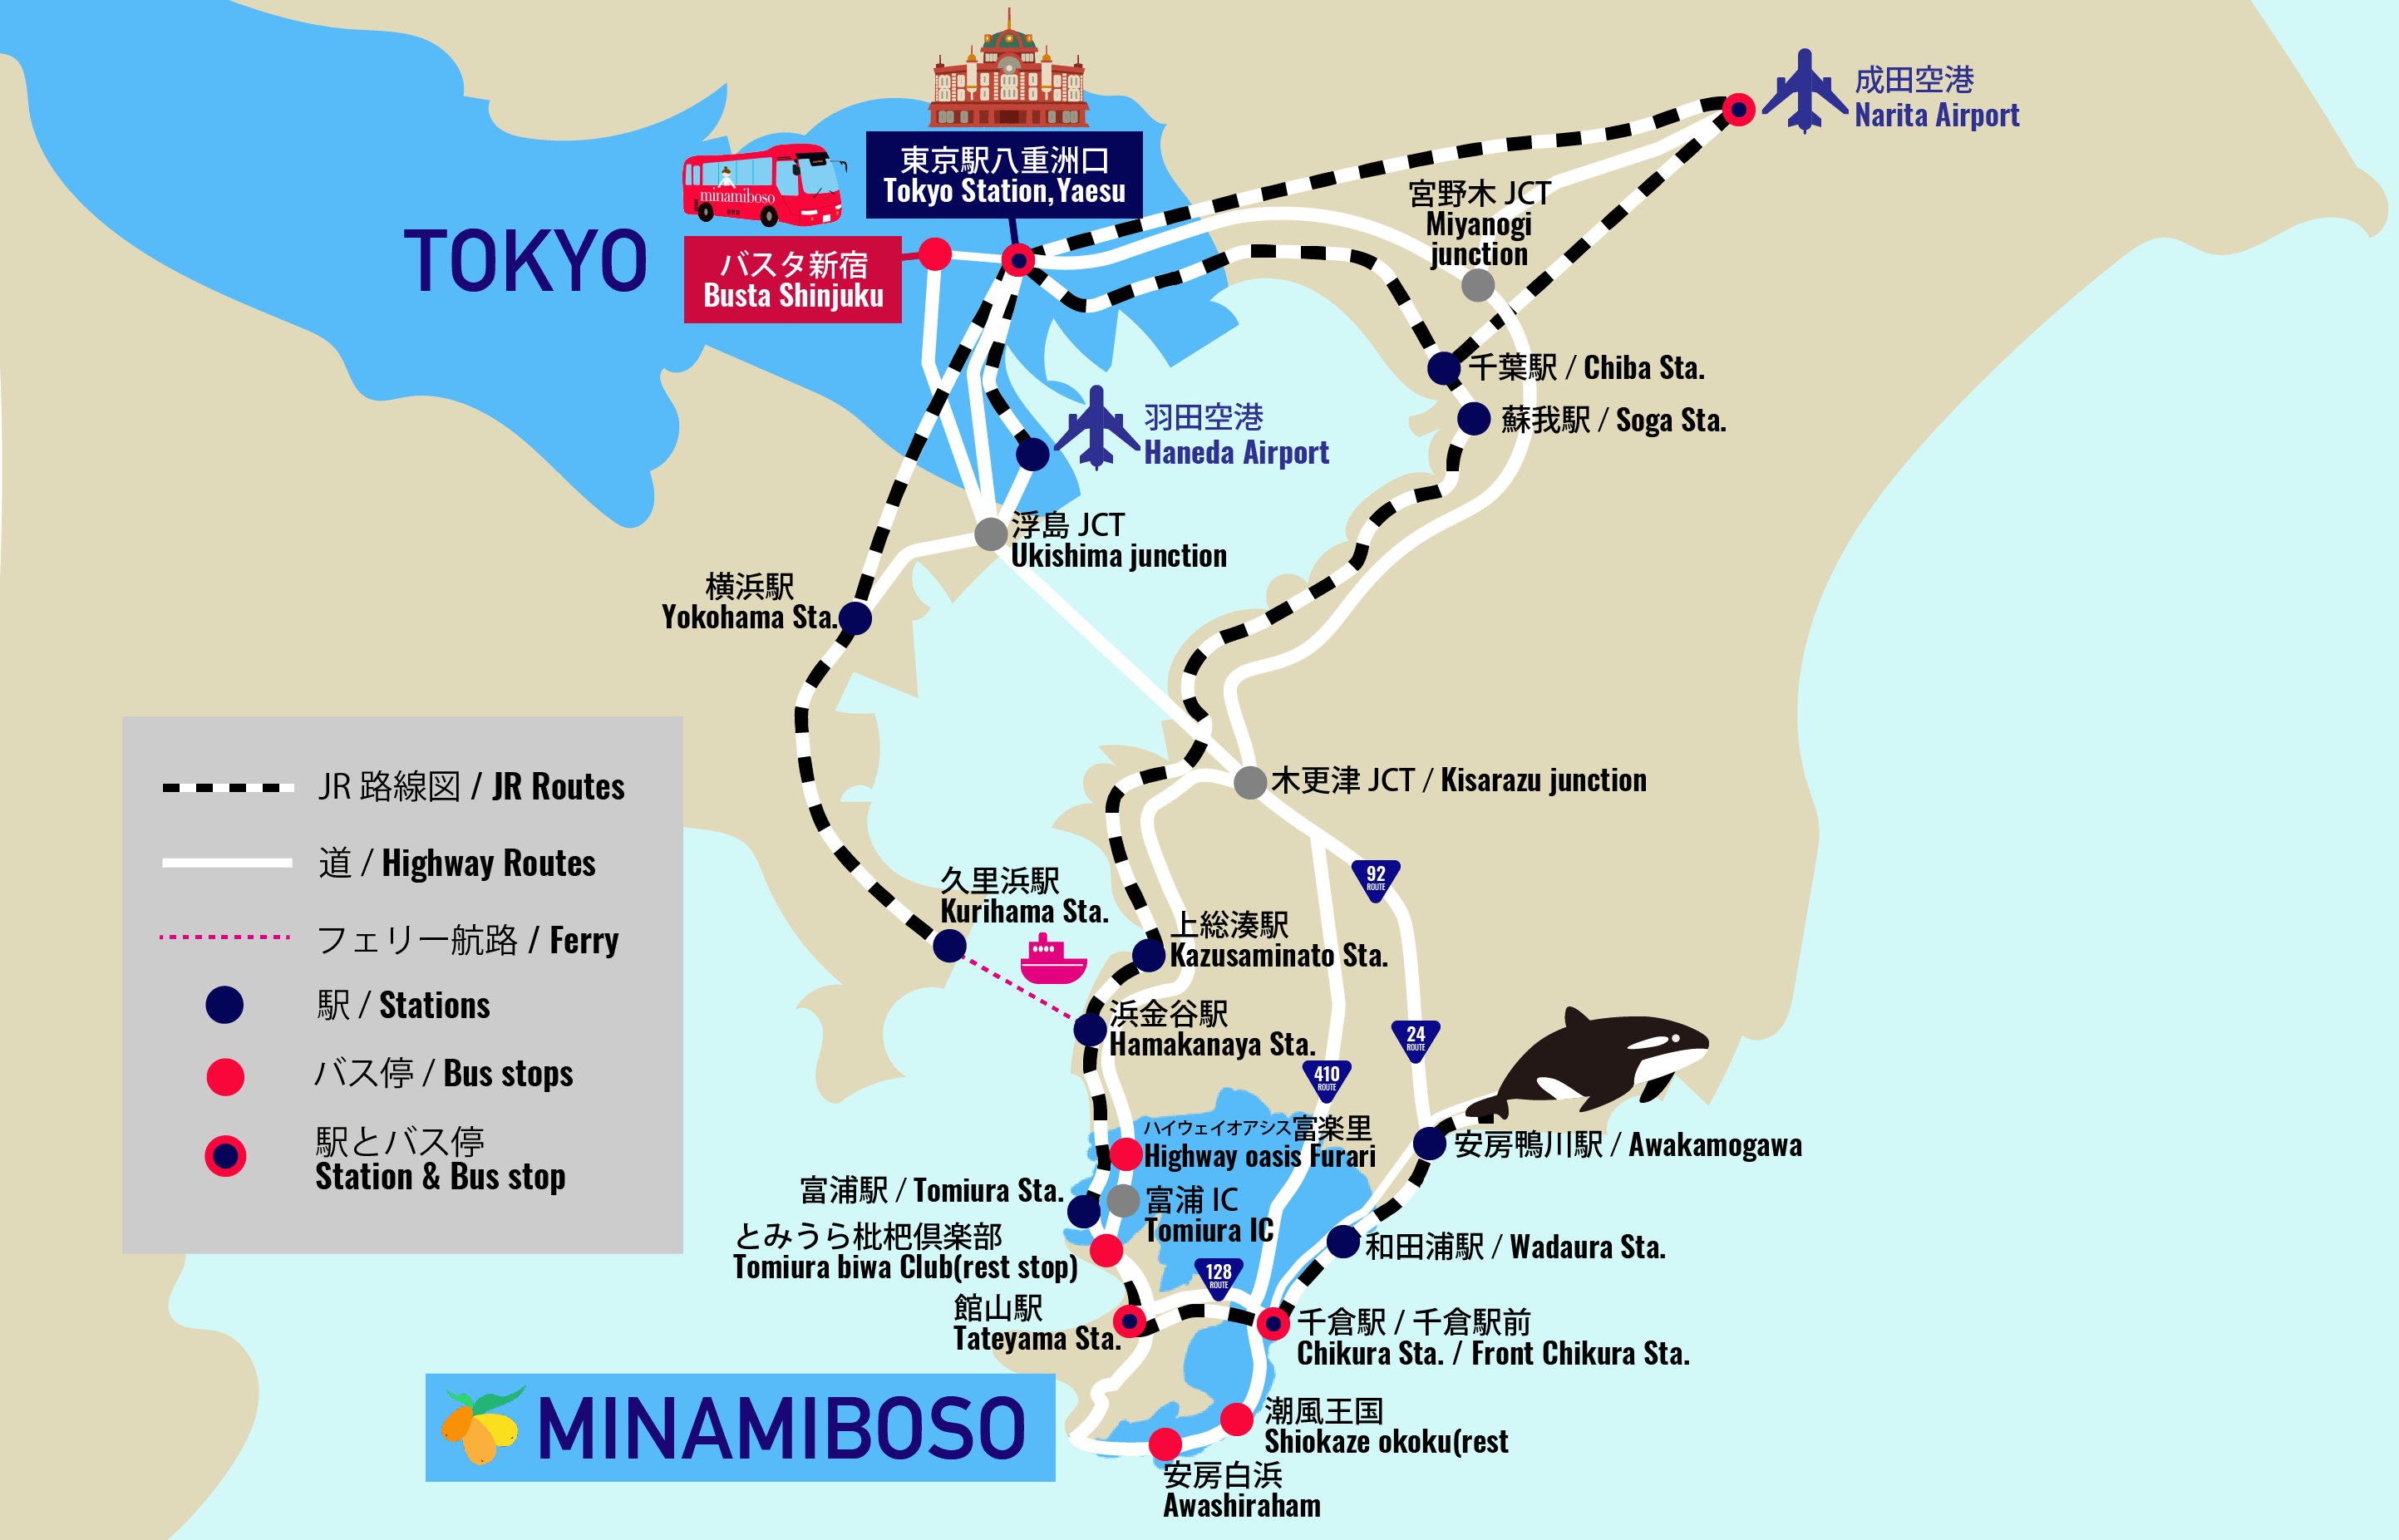 Getting to Minamiboso2